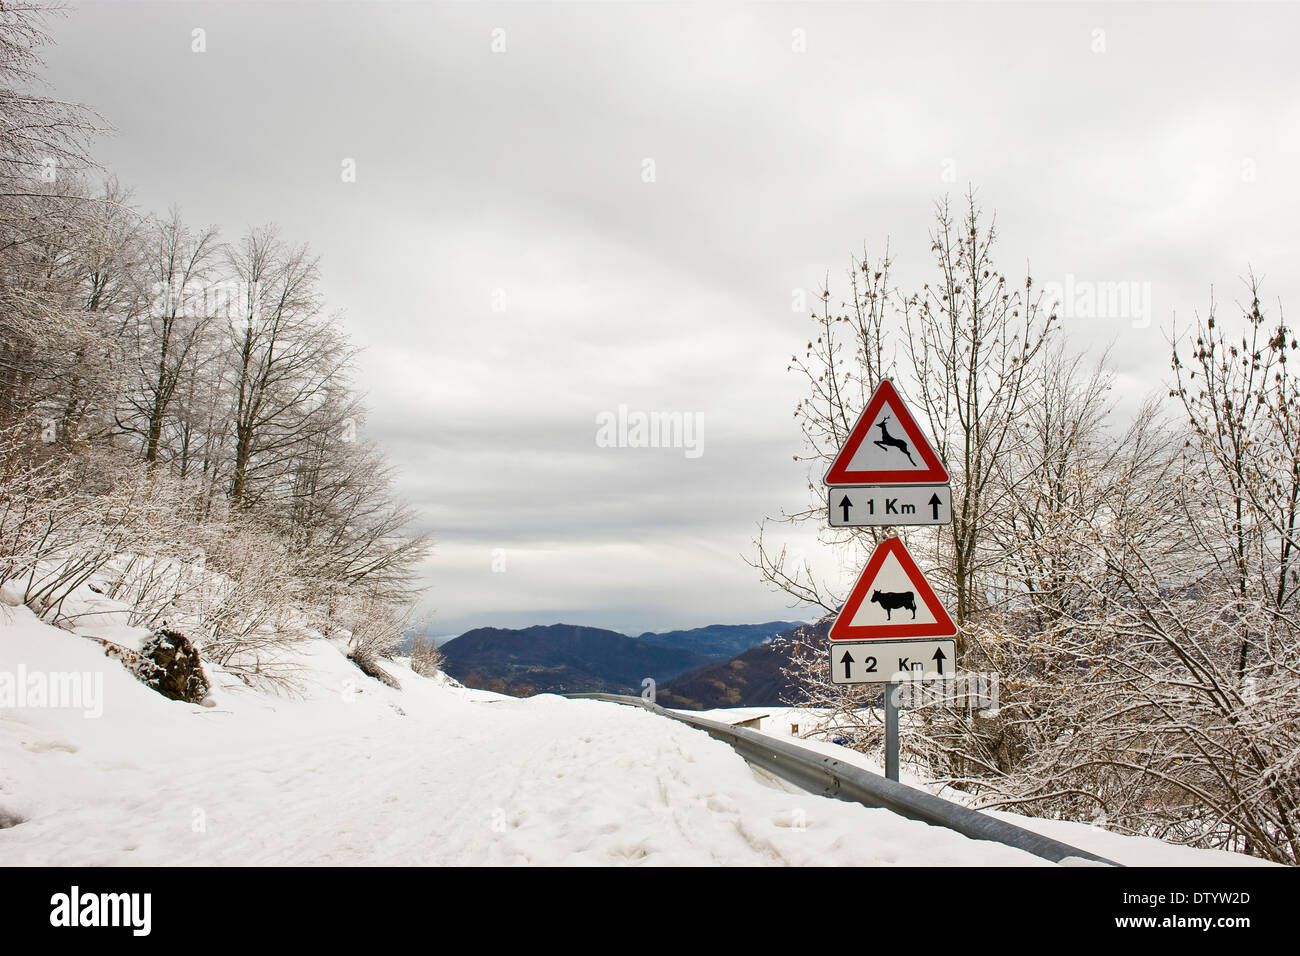 Italy, Recoaro Terme, road Stock Photo